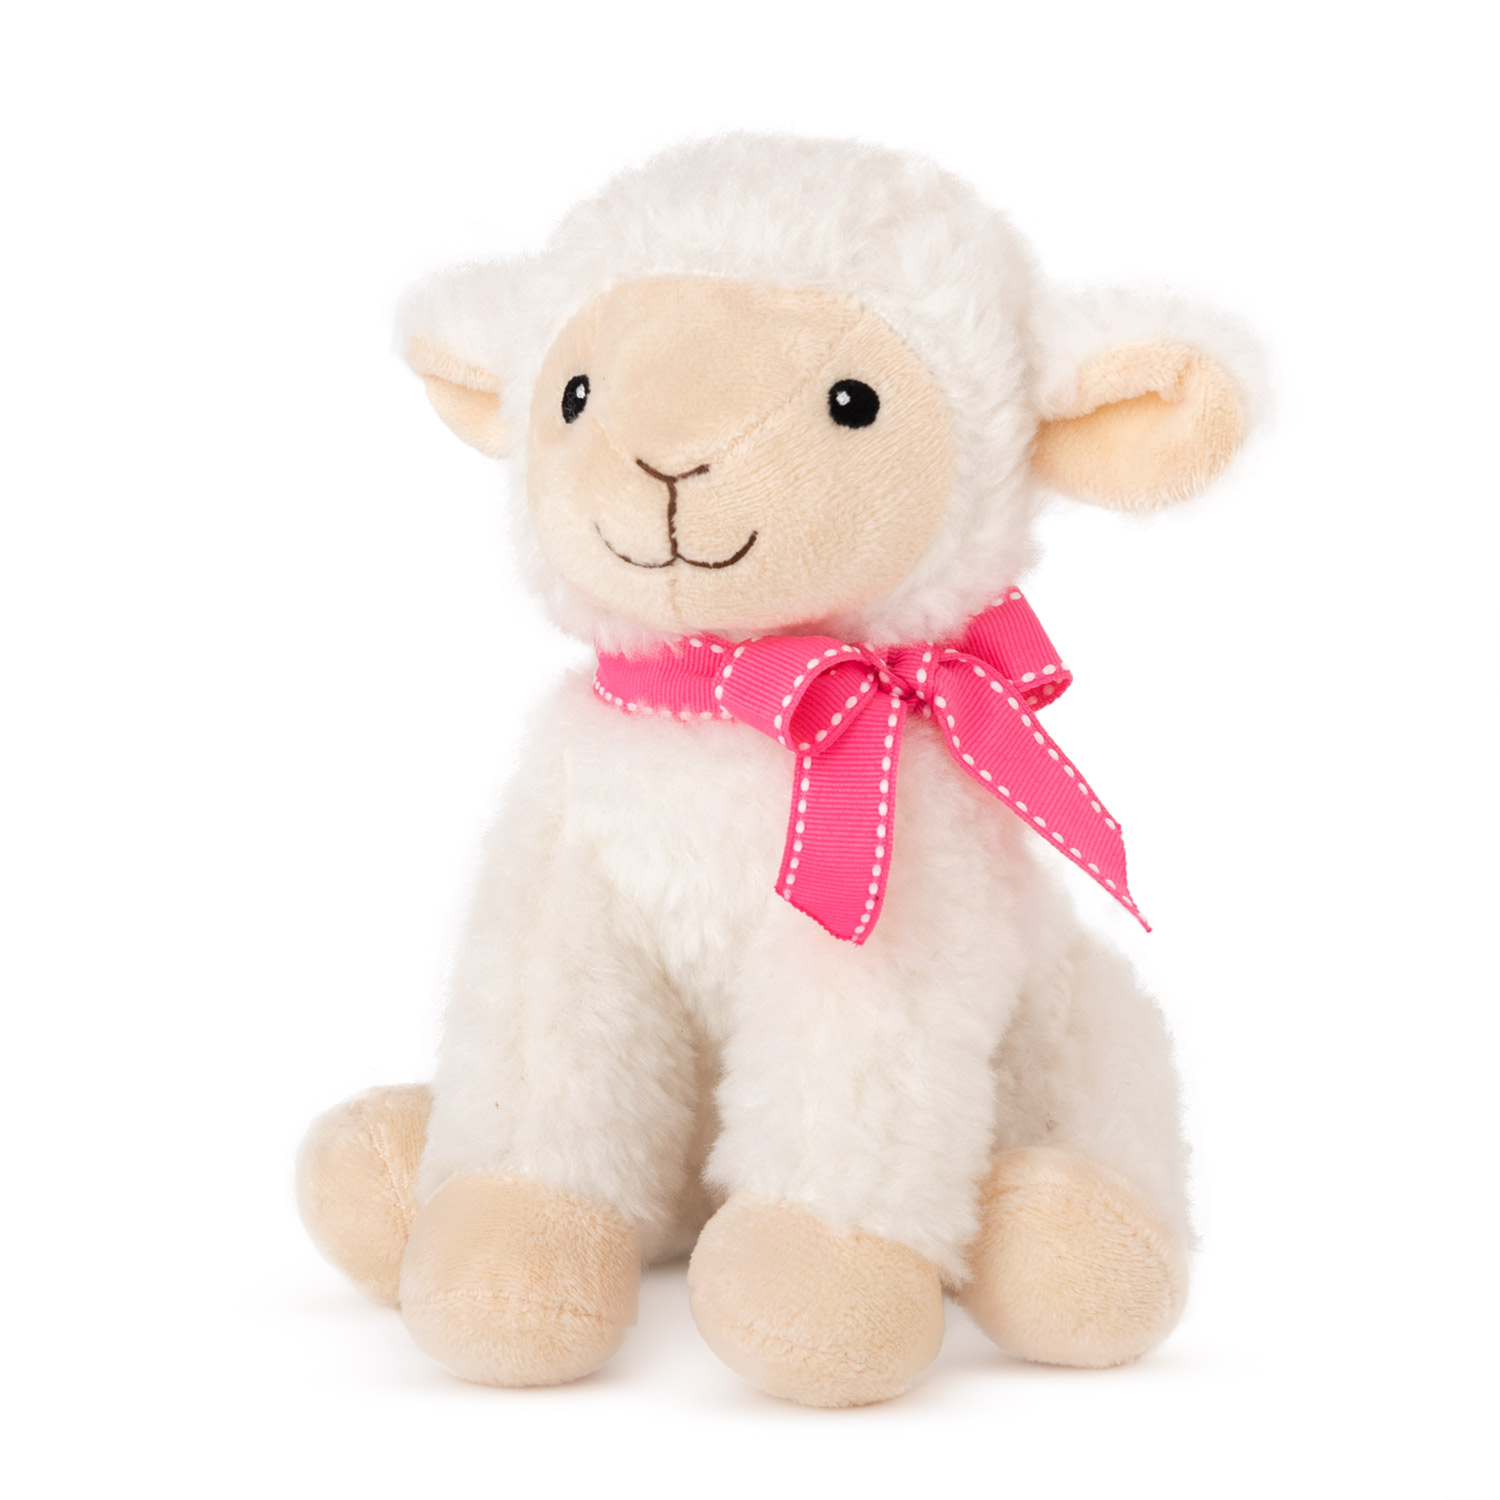 Sheep with pink ribbon